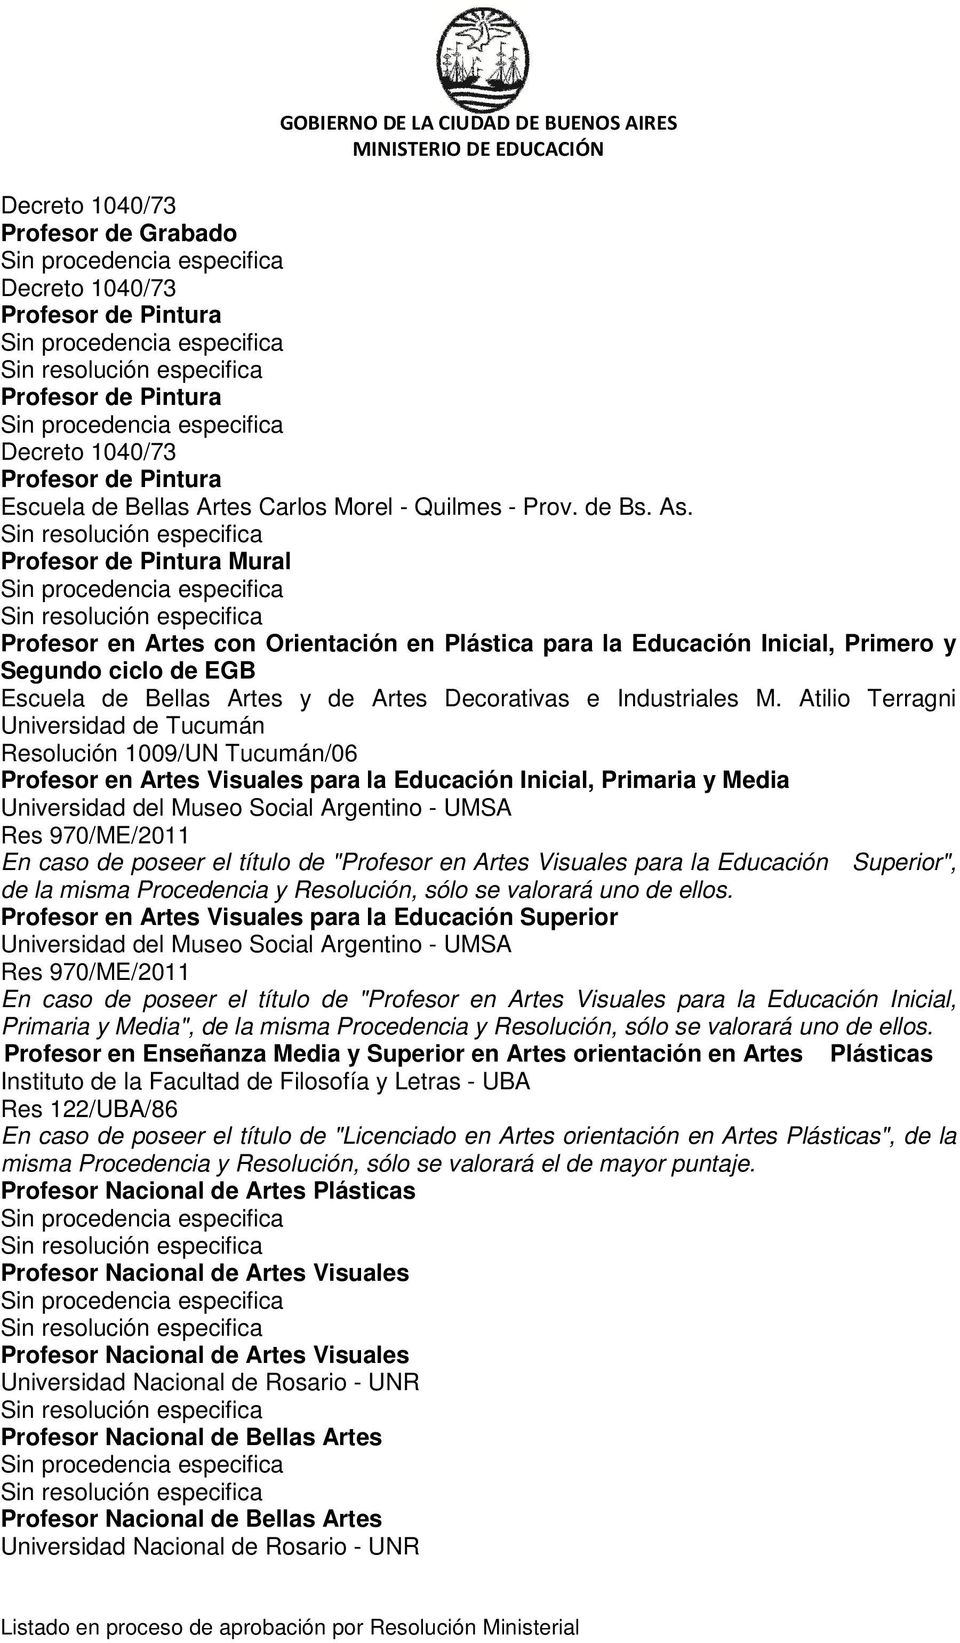 Atilio Terragni Universidad de Tucumán Resolución 1009/UN Tucumán/06 Profesor en Artes Visuales para la Educación Inicial, Primaria y Media Universidad del Museo Social Argentino - UMSA Res